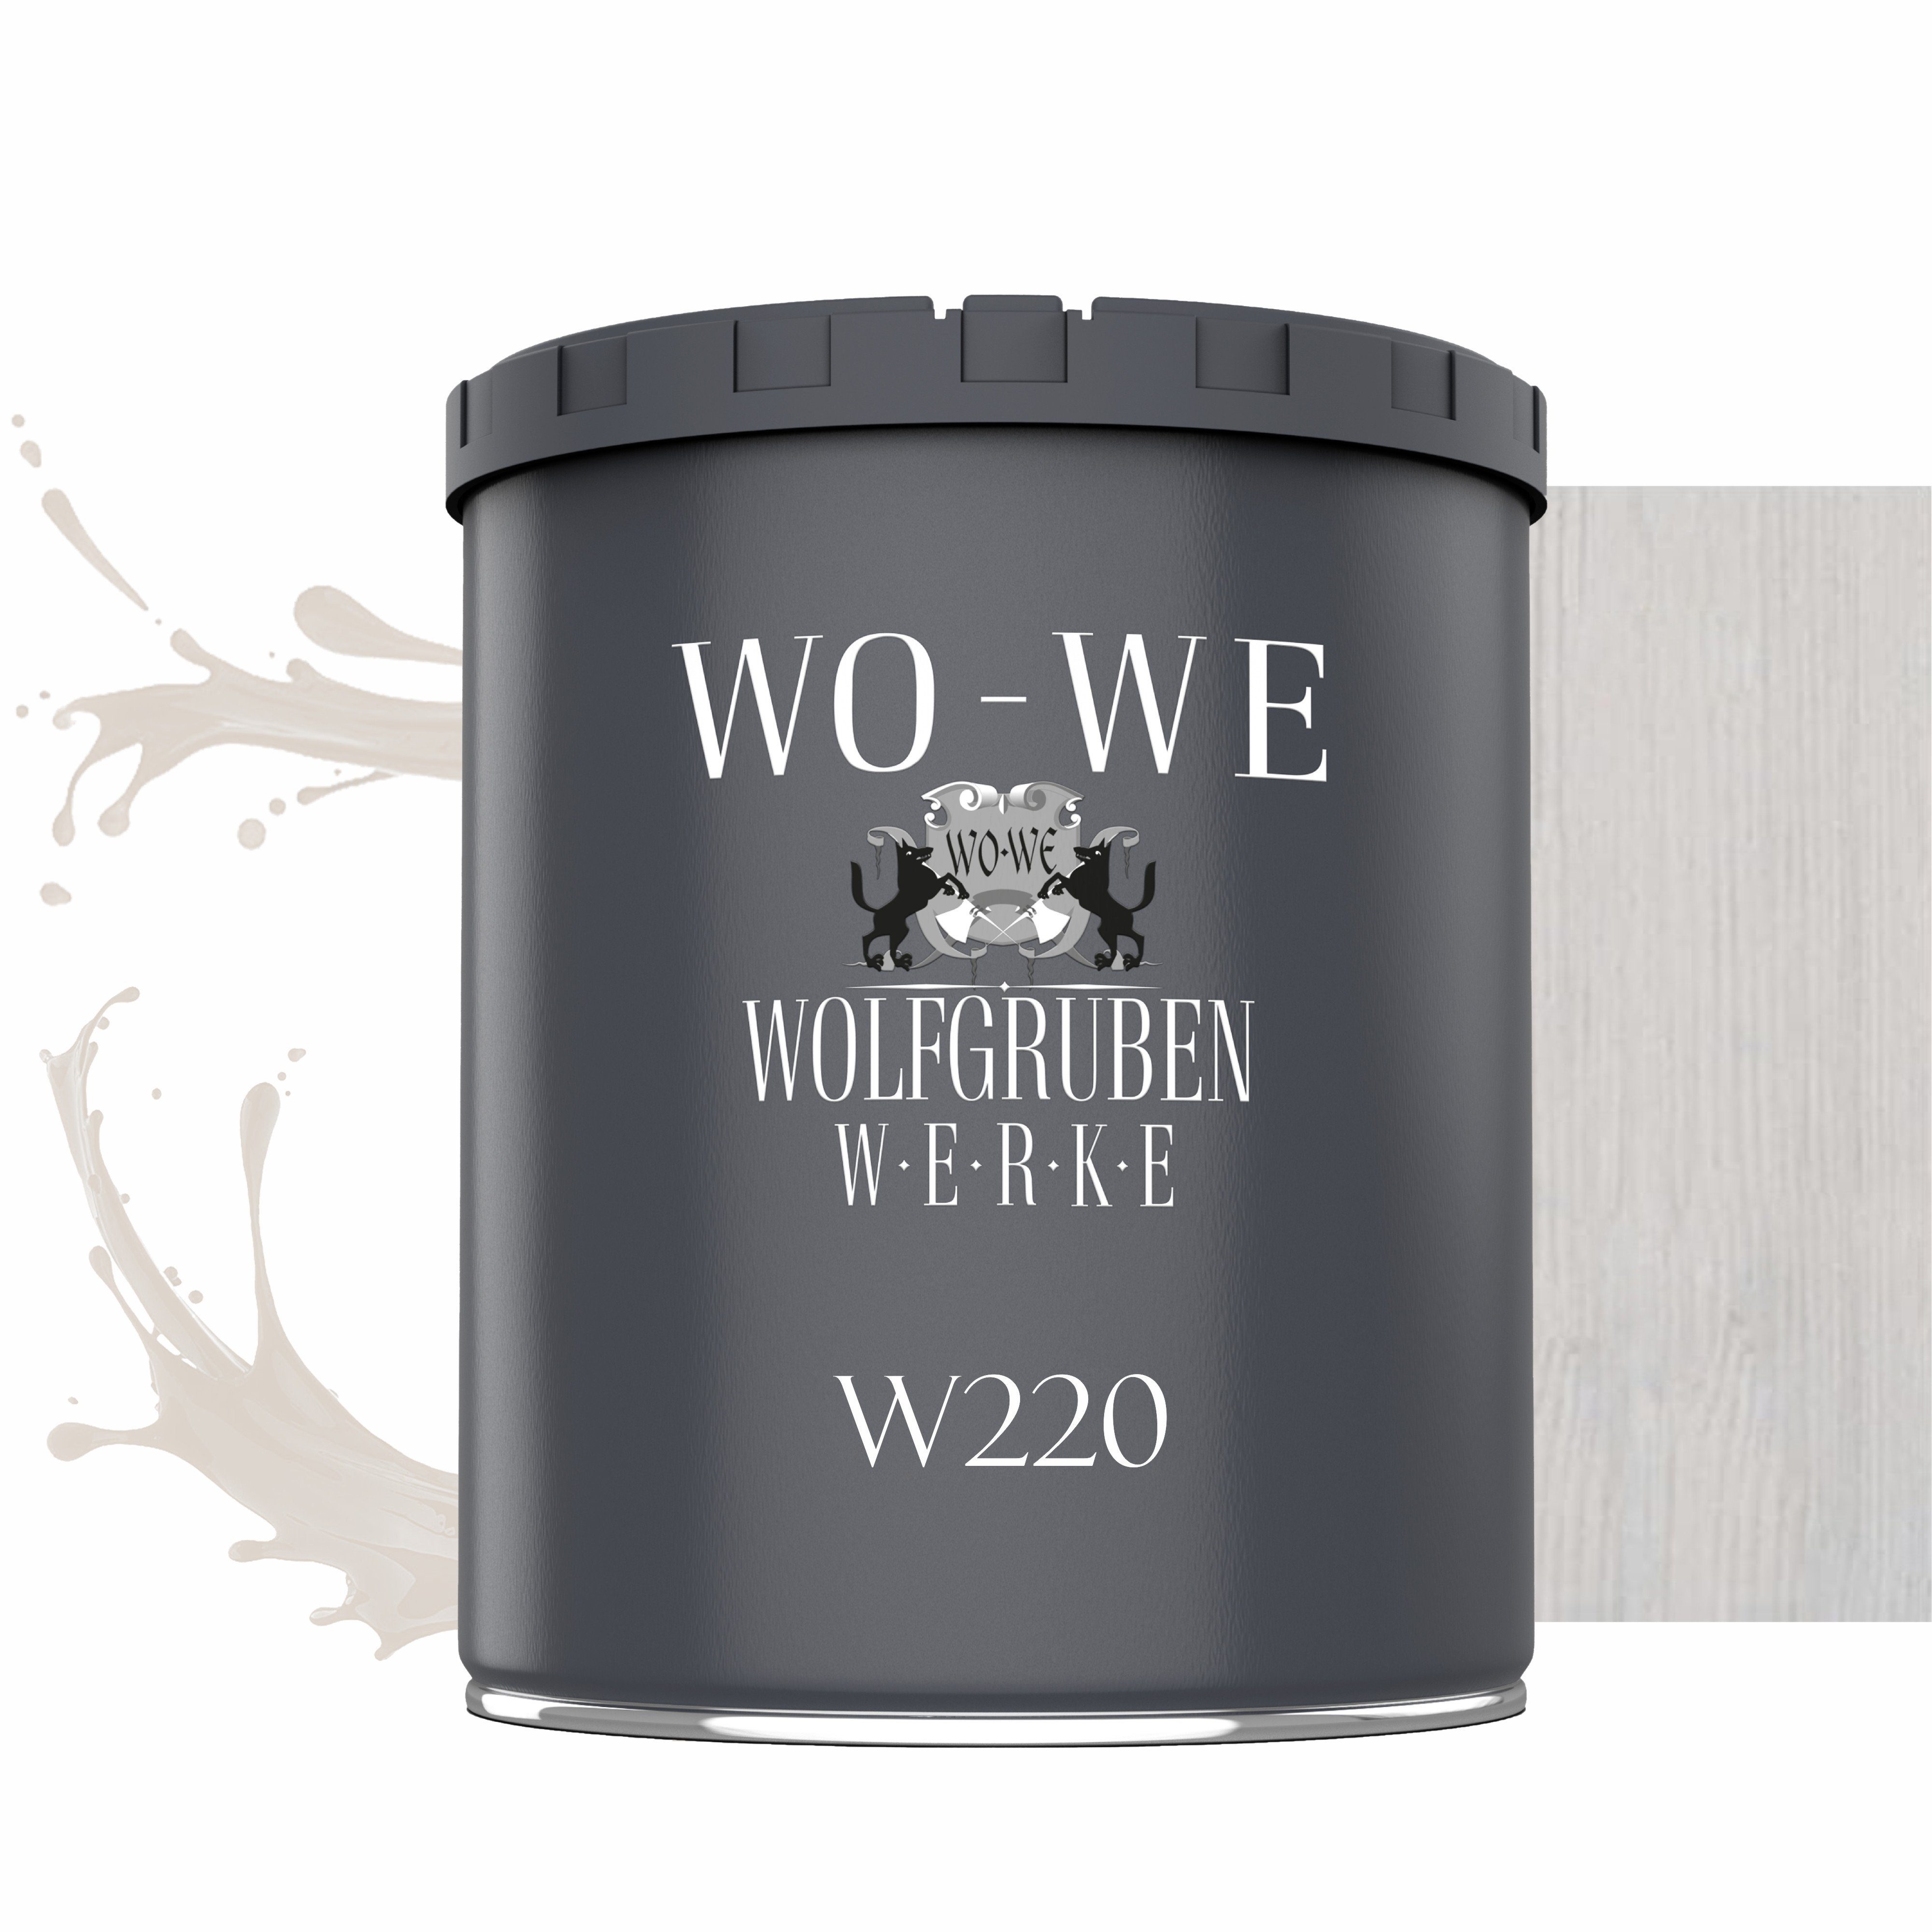 WO-WE Dickschichtlasur Holzschutzlasur 2in1 Holzlasur W220, 1-2,5L, Lösemittelfrei, UV-stabil Weiß